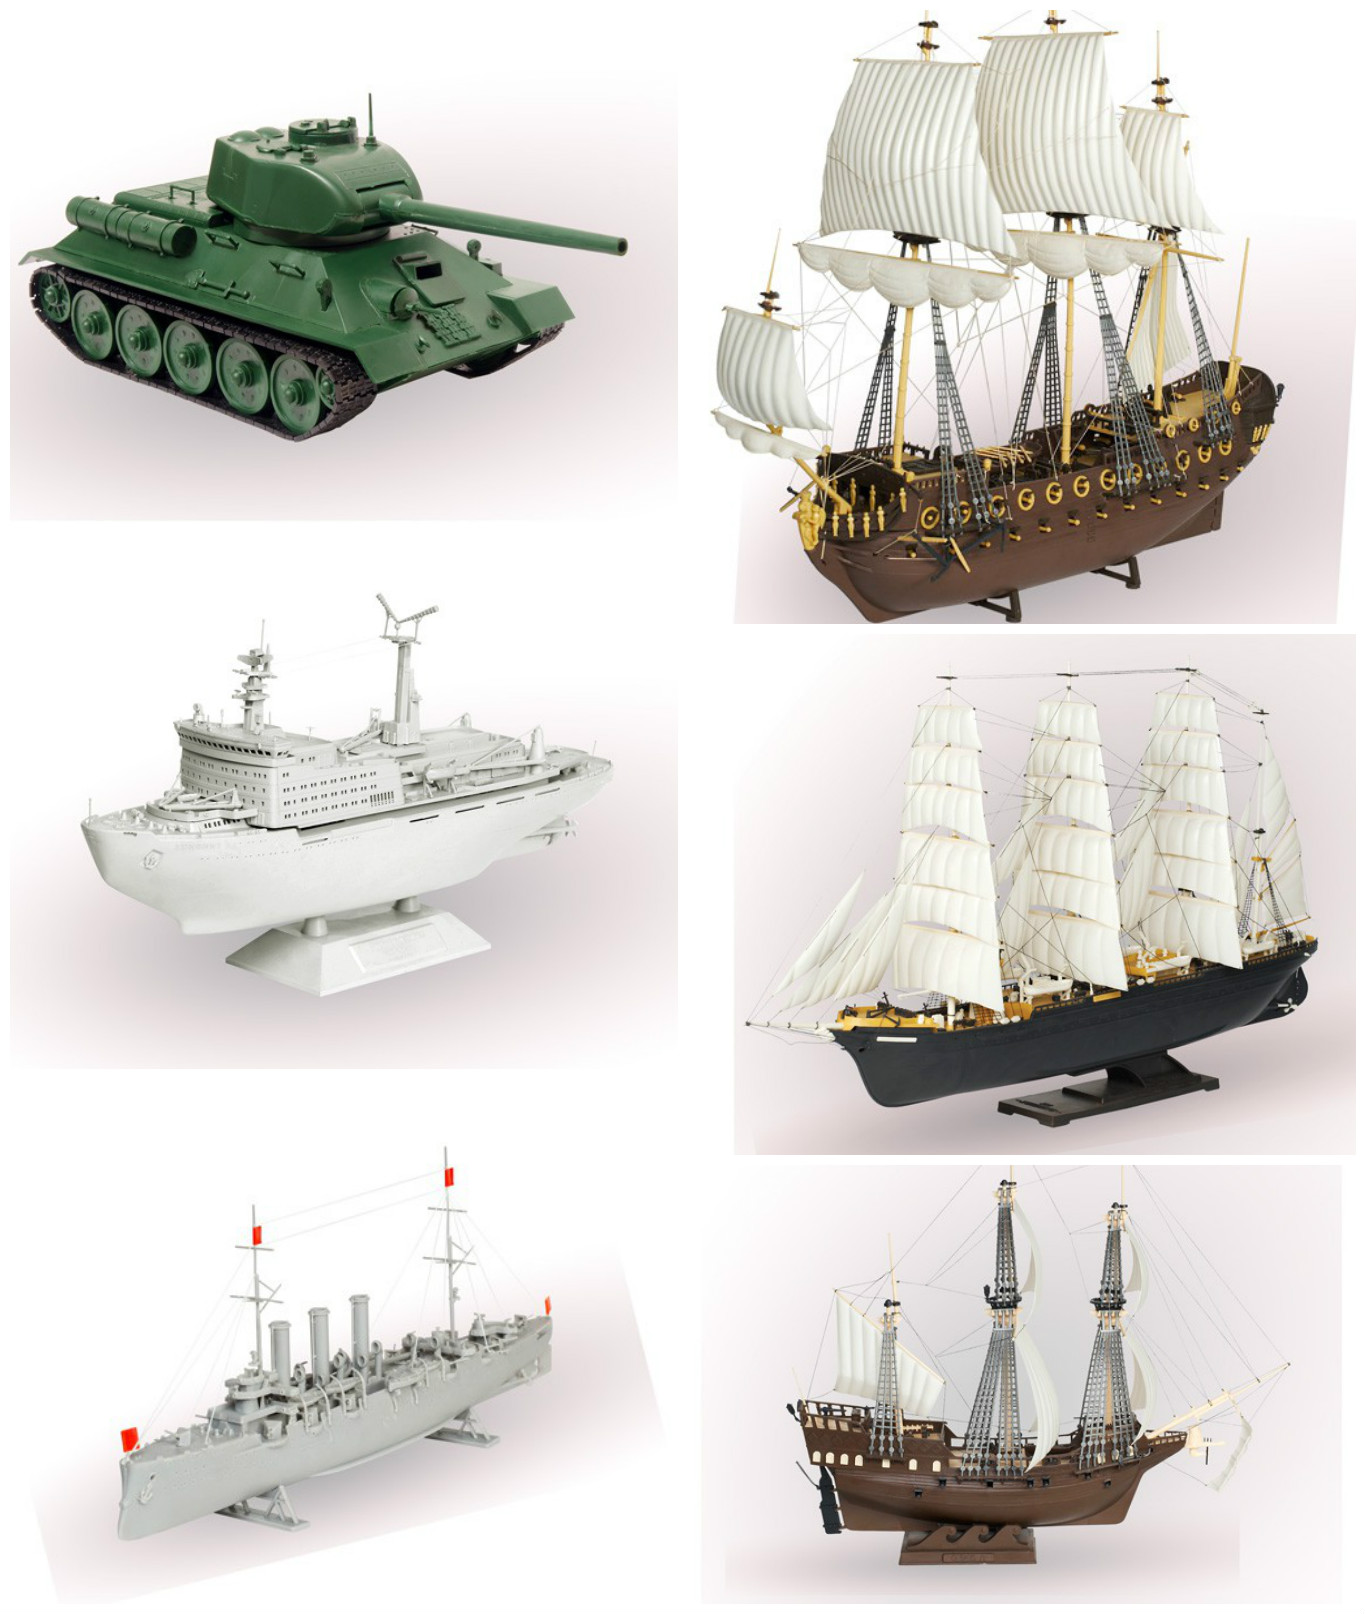 Купить собранную модель. Модель для склеивания корабль. Модели военных кораблей для сборки. Модели из пластмассы. Модели кораблей для склеивания из пластика.